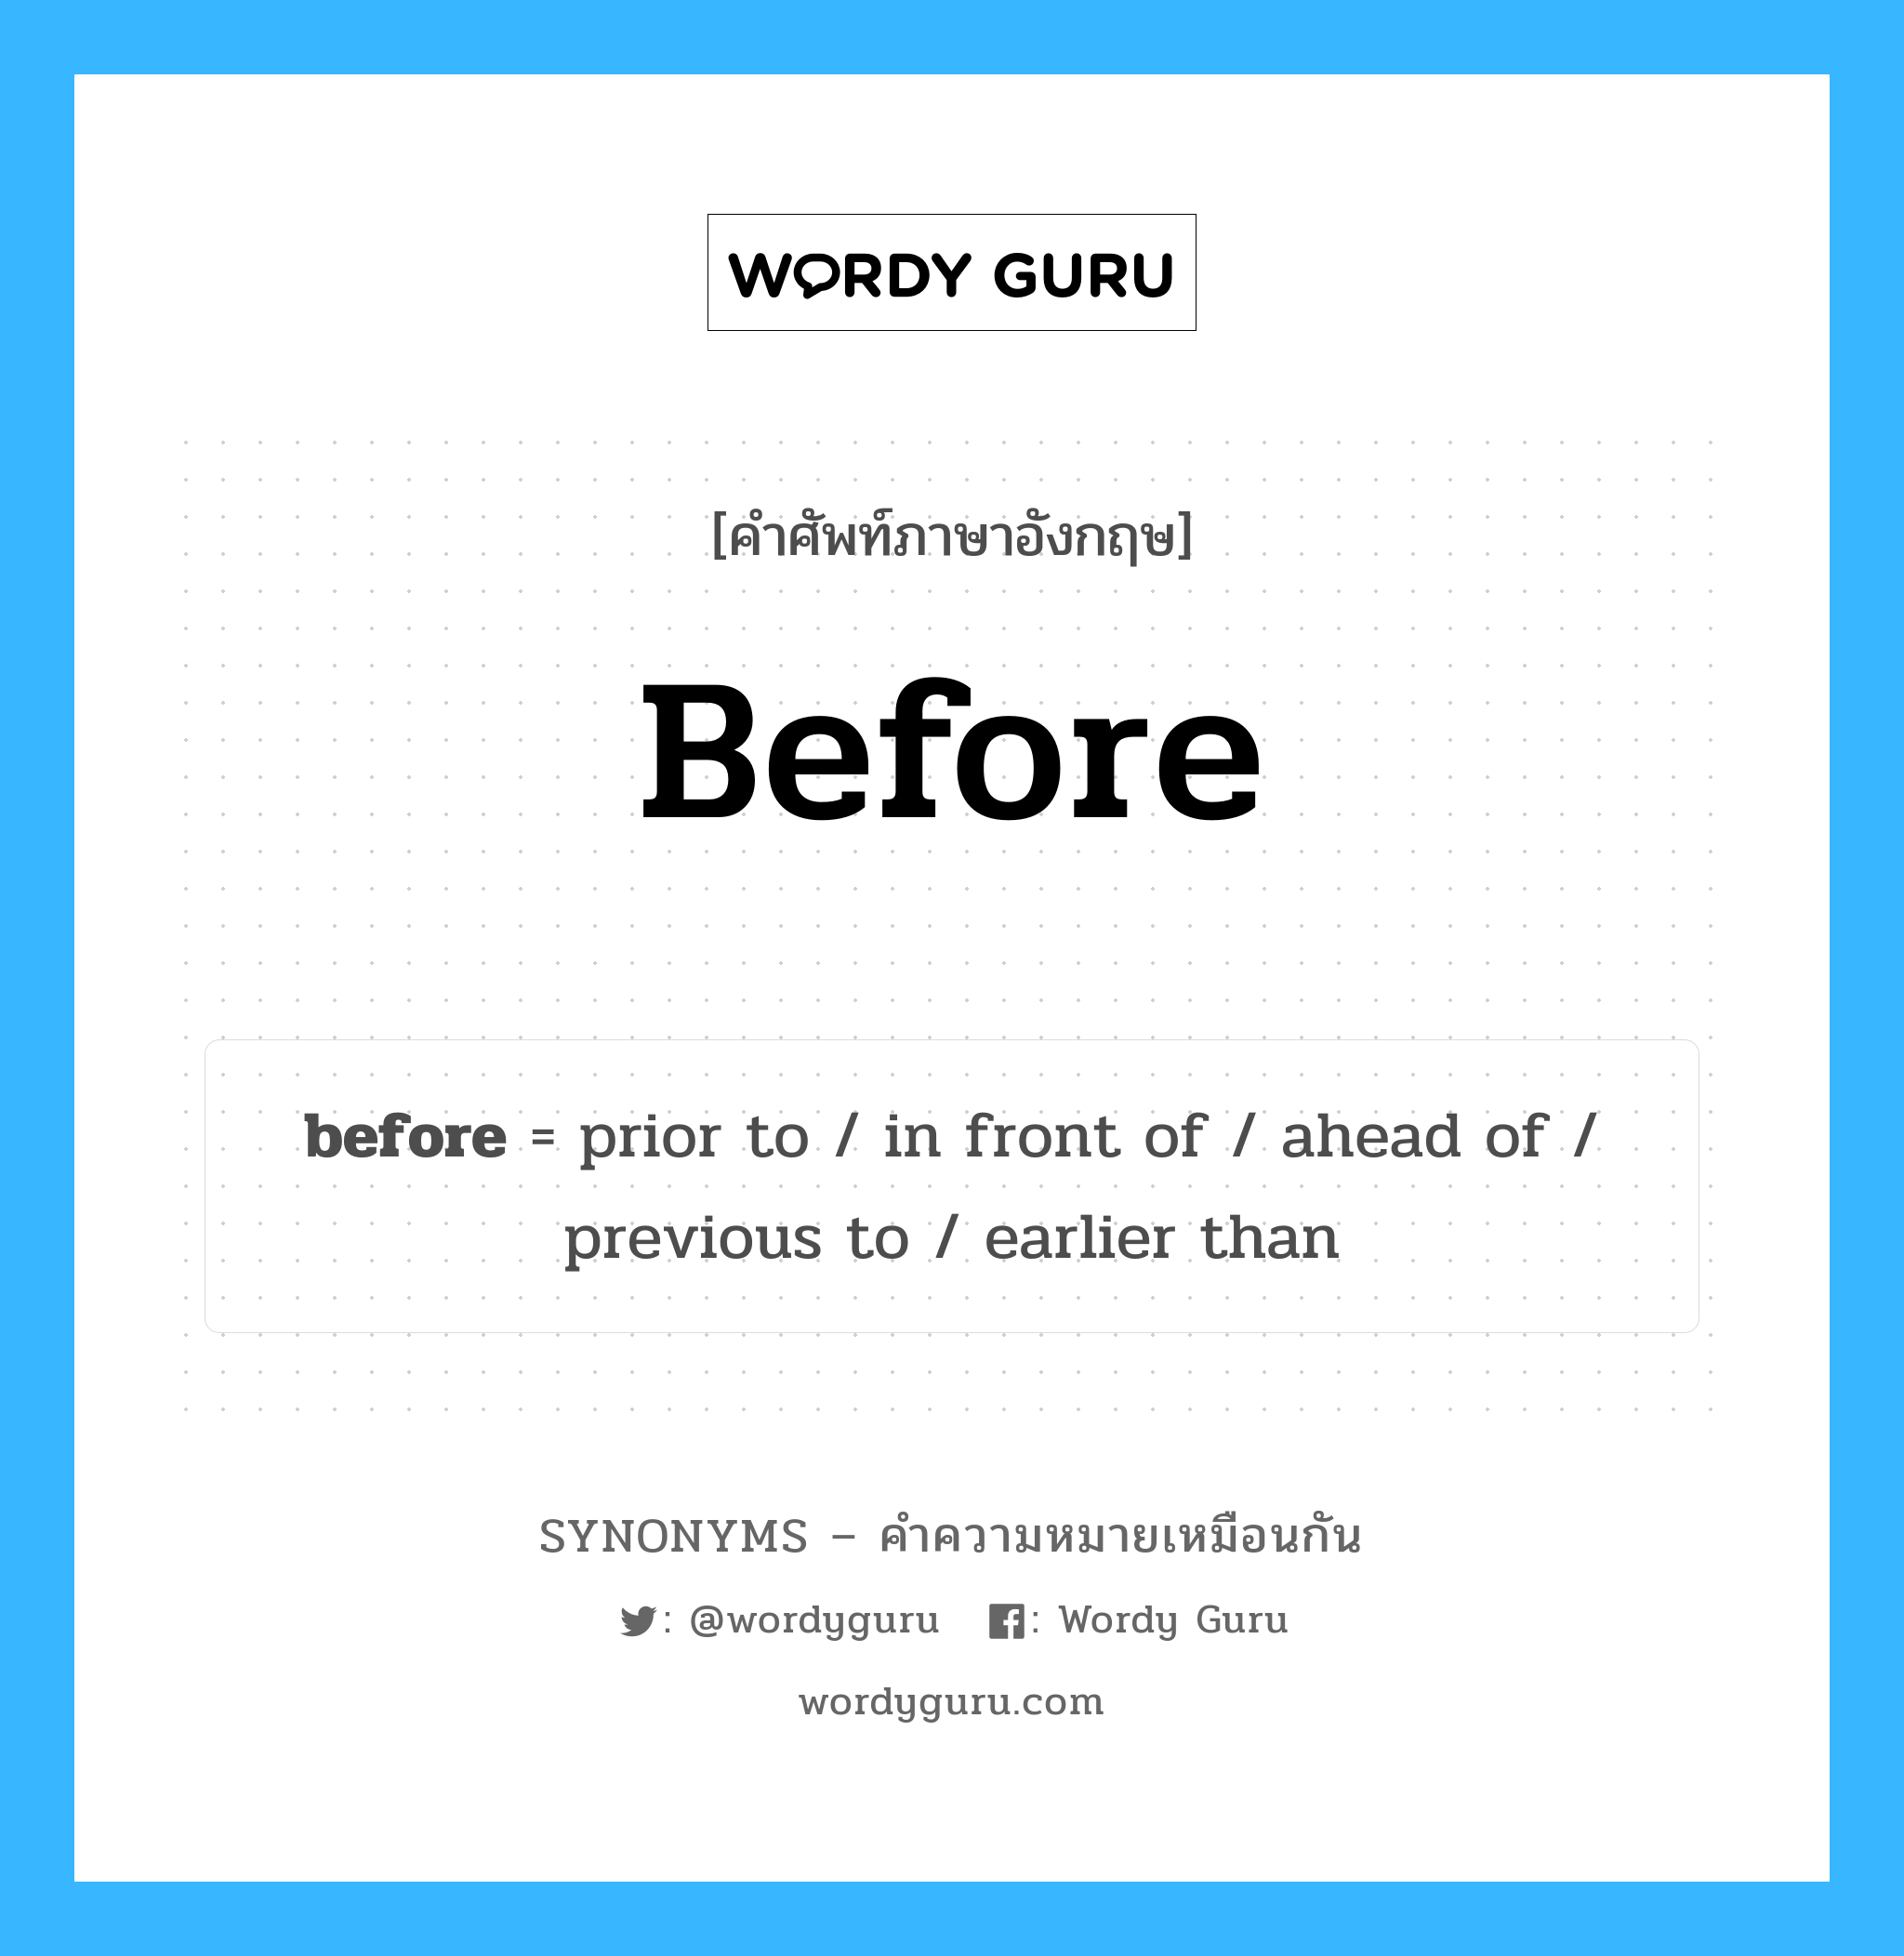 prior to เป็นหนึ่งใน before และมีคำอื่น ๆ อีกดังนี้, คำศัพท์ภาษาอังกฤษ prior to ความหมายคล้ายกันกับ before แปลว่า ก่อนที่จะ หมวด before